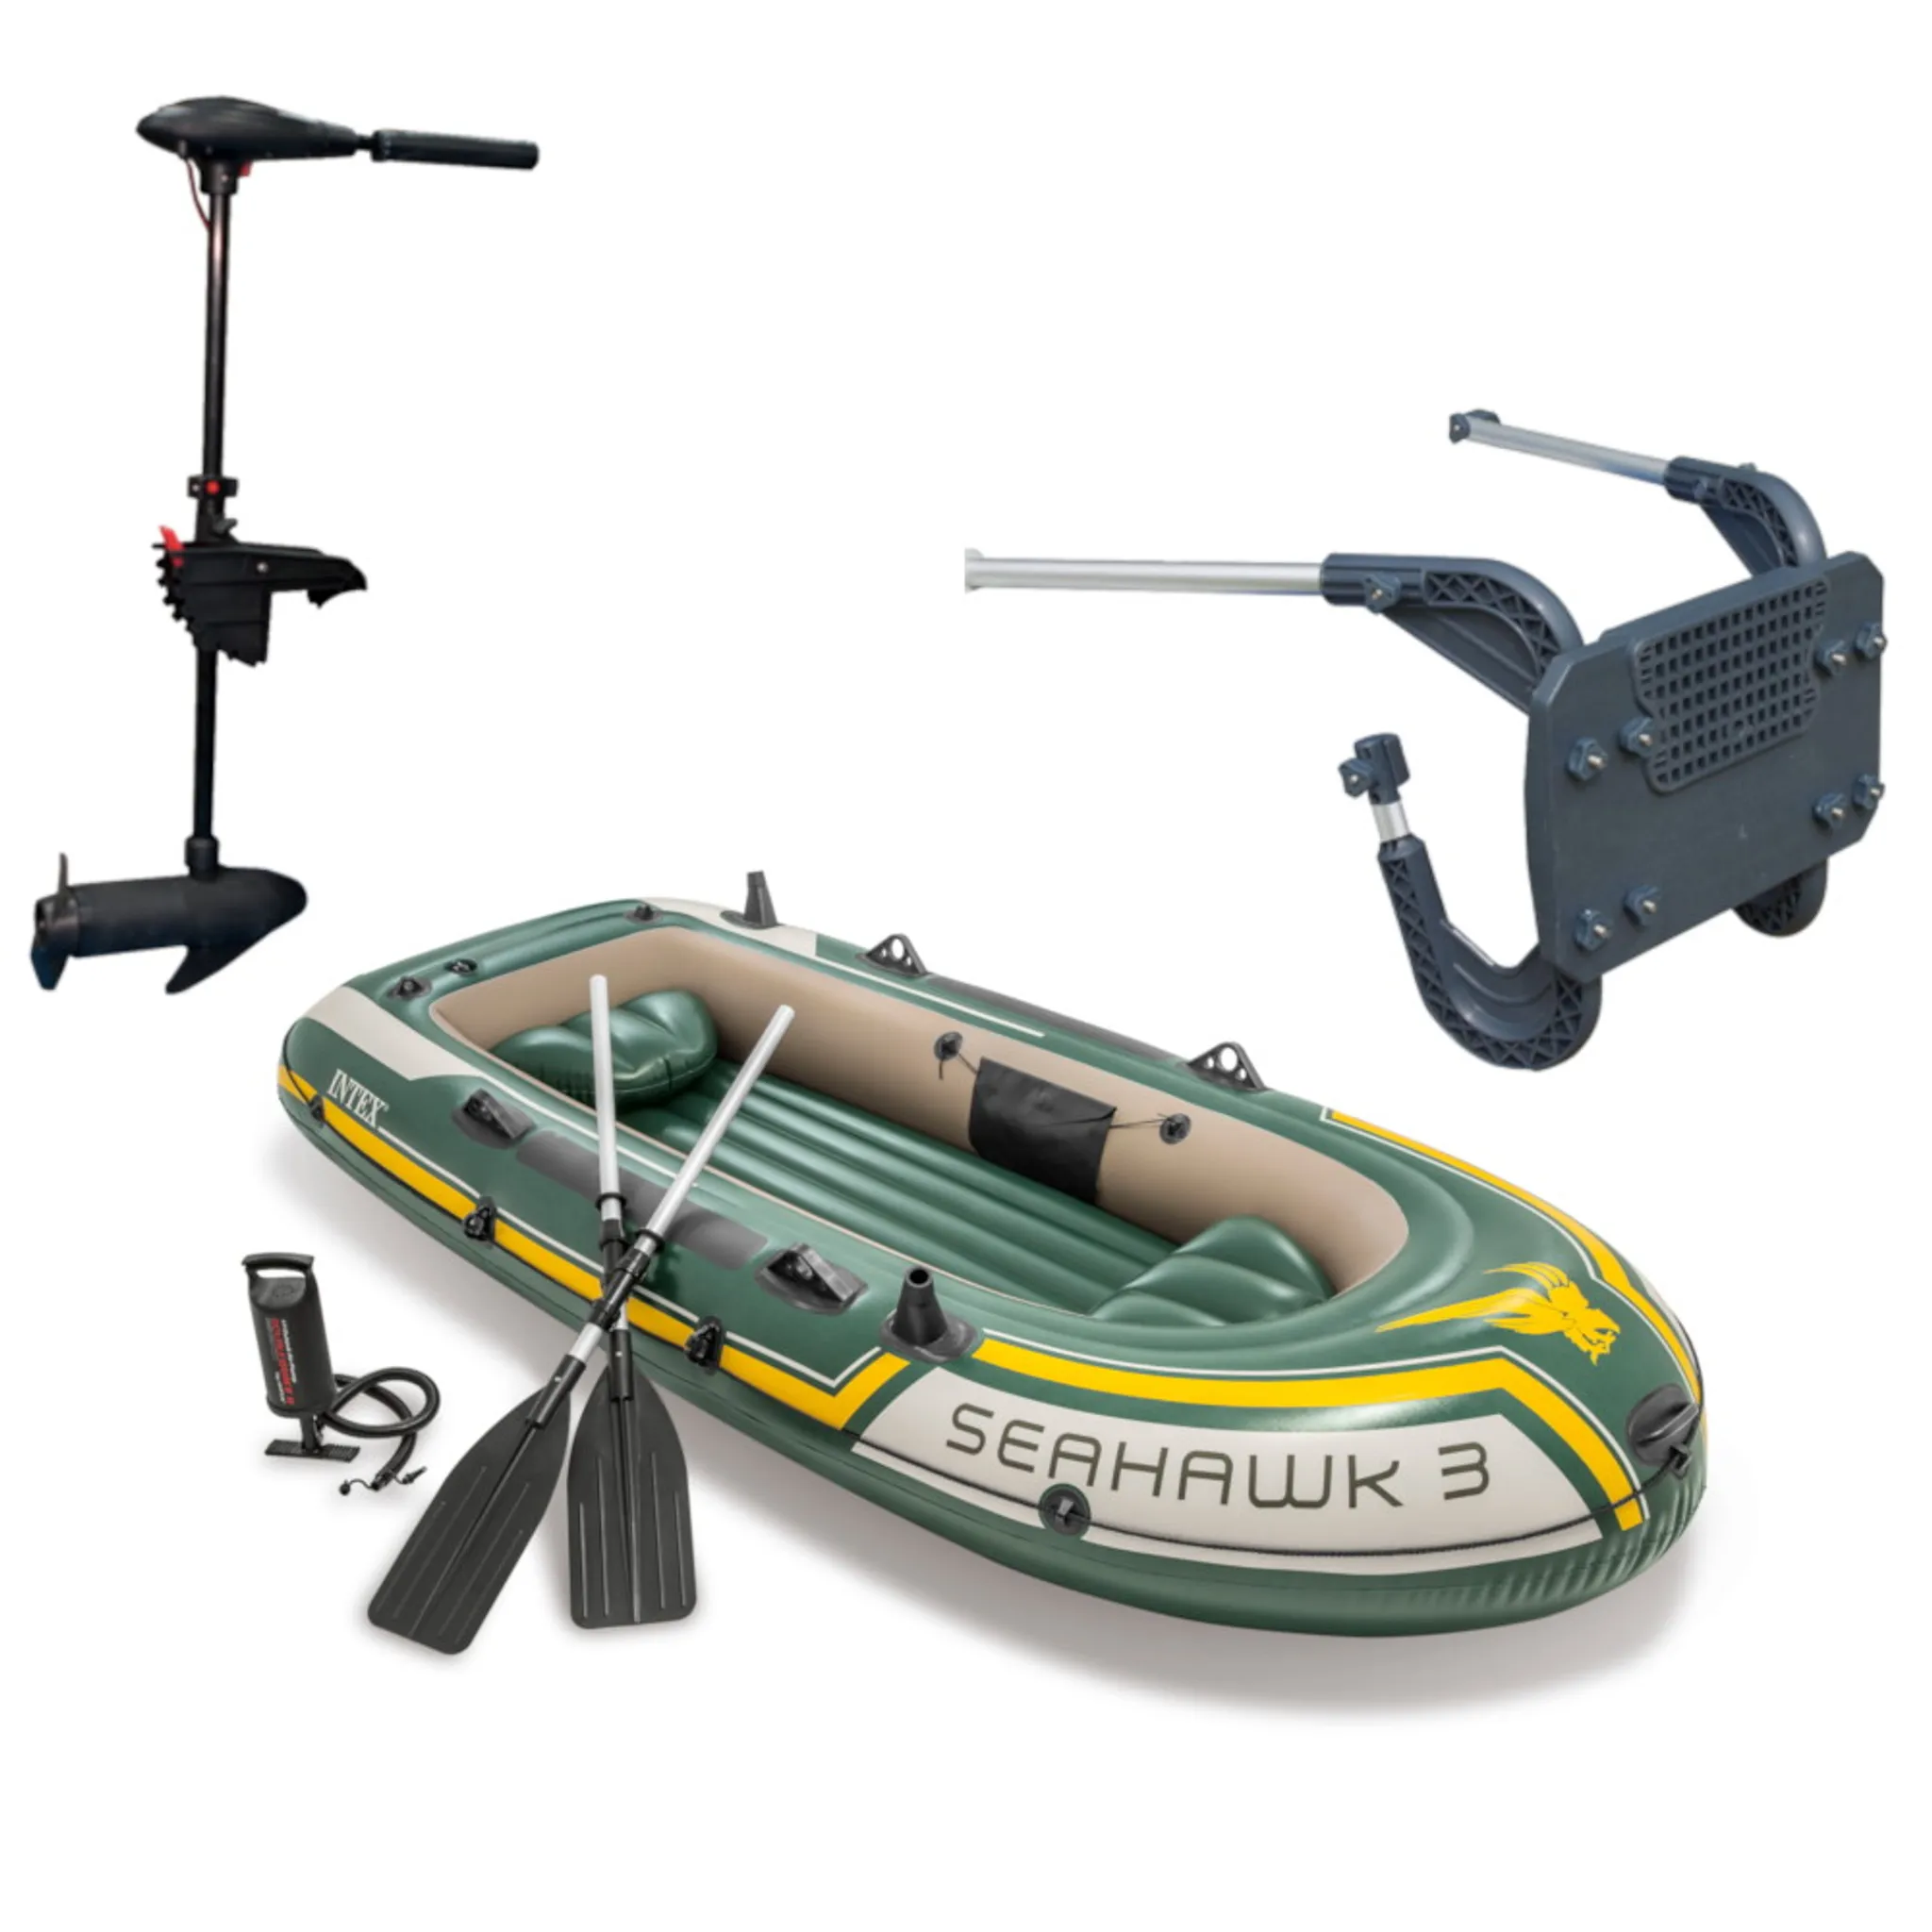 KESSER® Schlauchboot 3,20 m für 4 Personen - WAVE Motor geeignet  Freizeitboot Paddelboot Motorboot Angelboot - mit 2 Sitzbänken - Alu-Boden  Paddel Pumpe Reparaturset & Tasche aufblasbar PVC